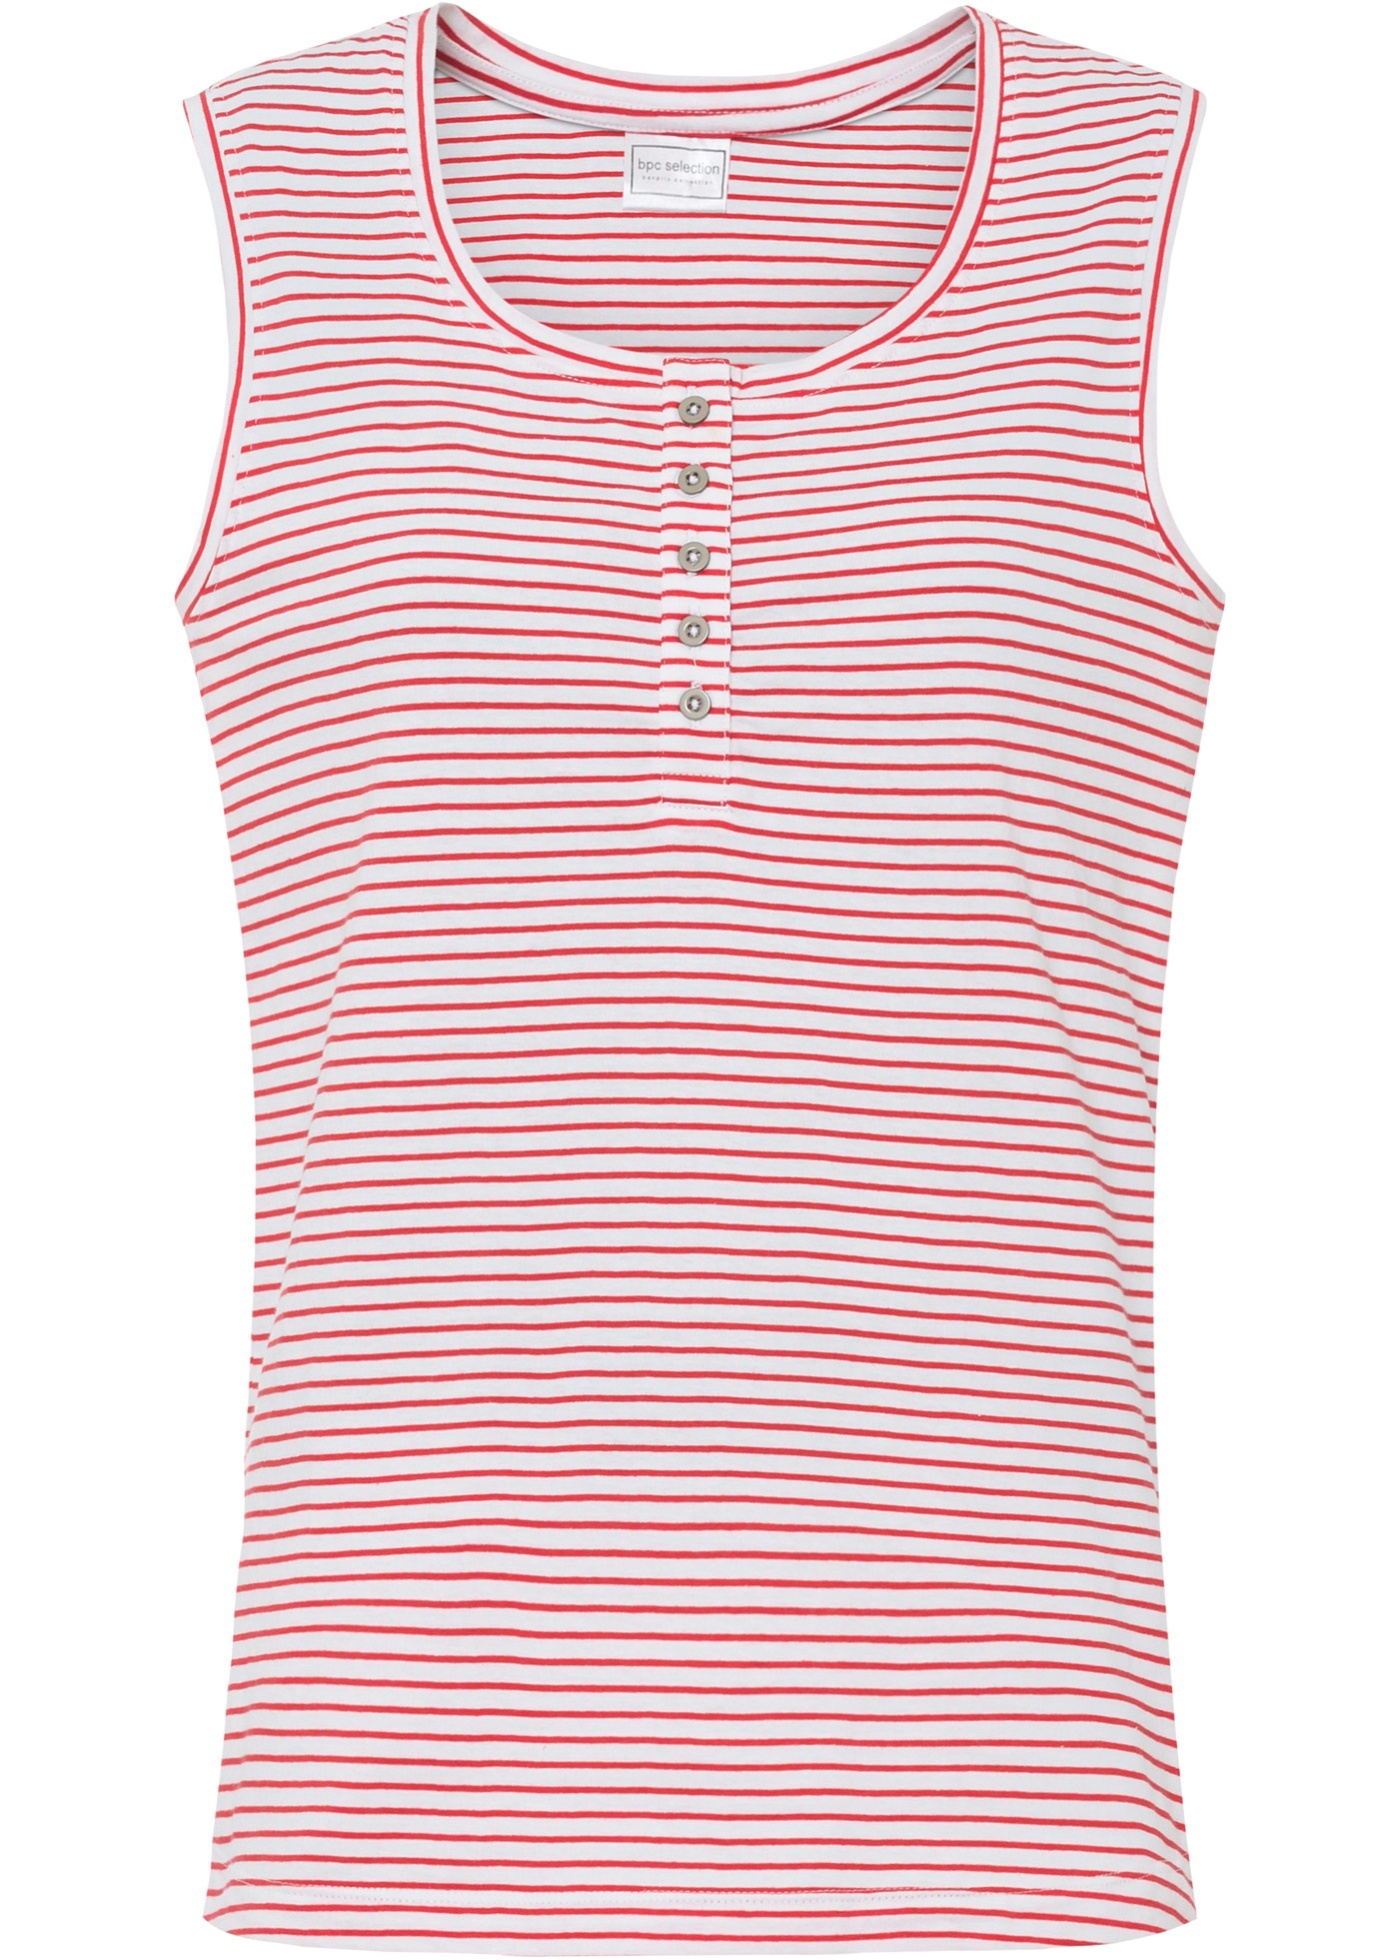 Shirttop (91648295) in rot/weiß geringelt